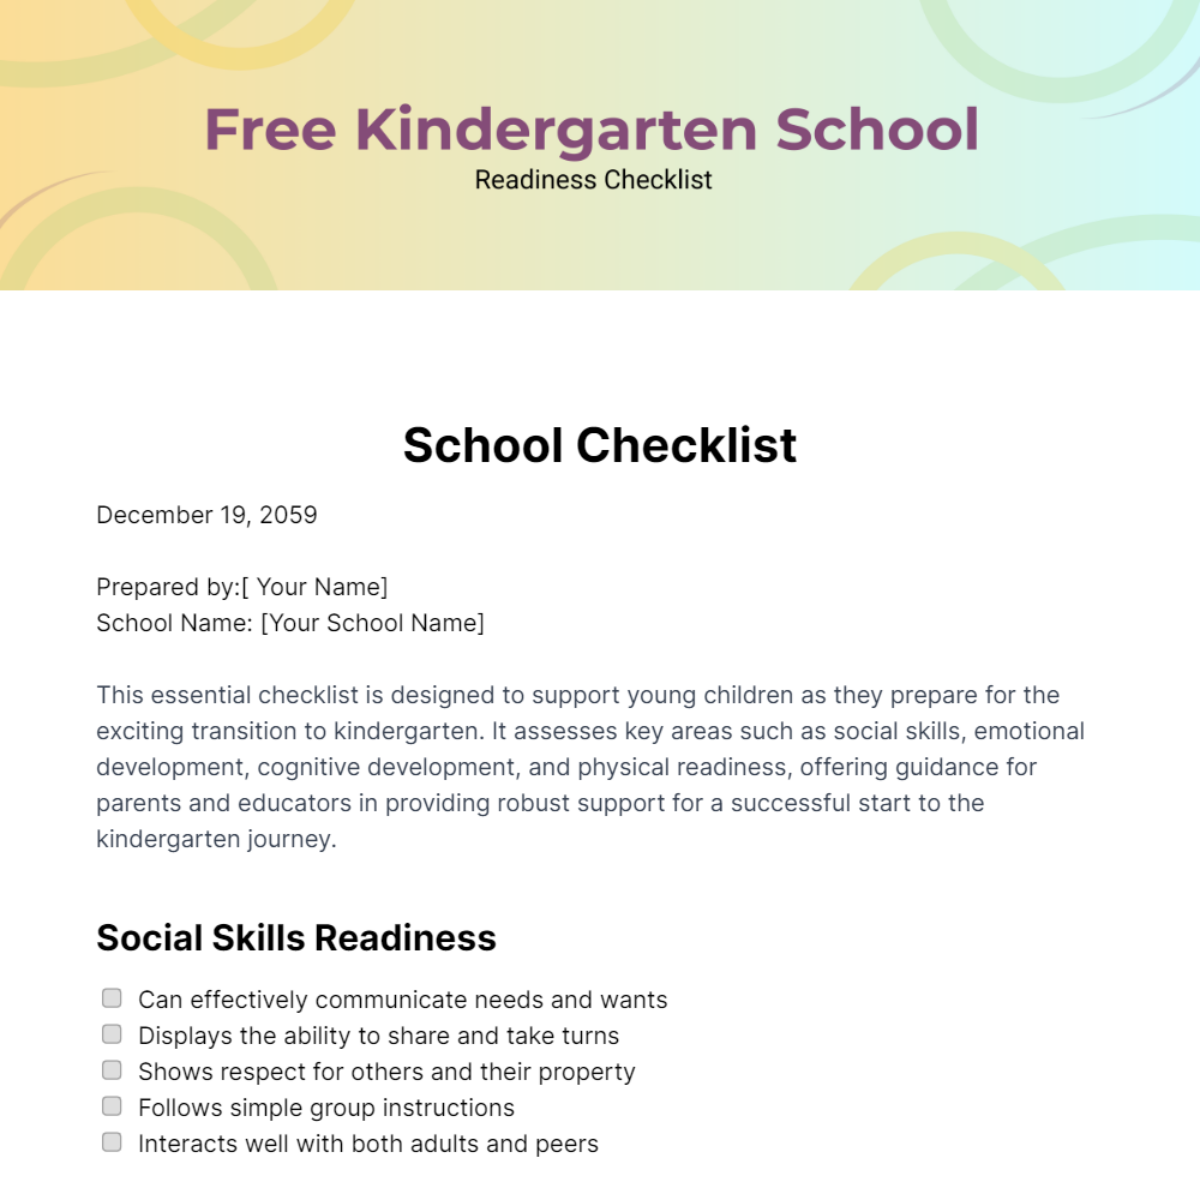 Free Kindergarten School Readiness Checklist Template